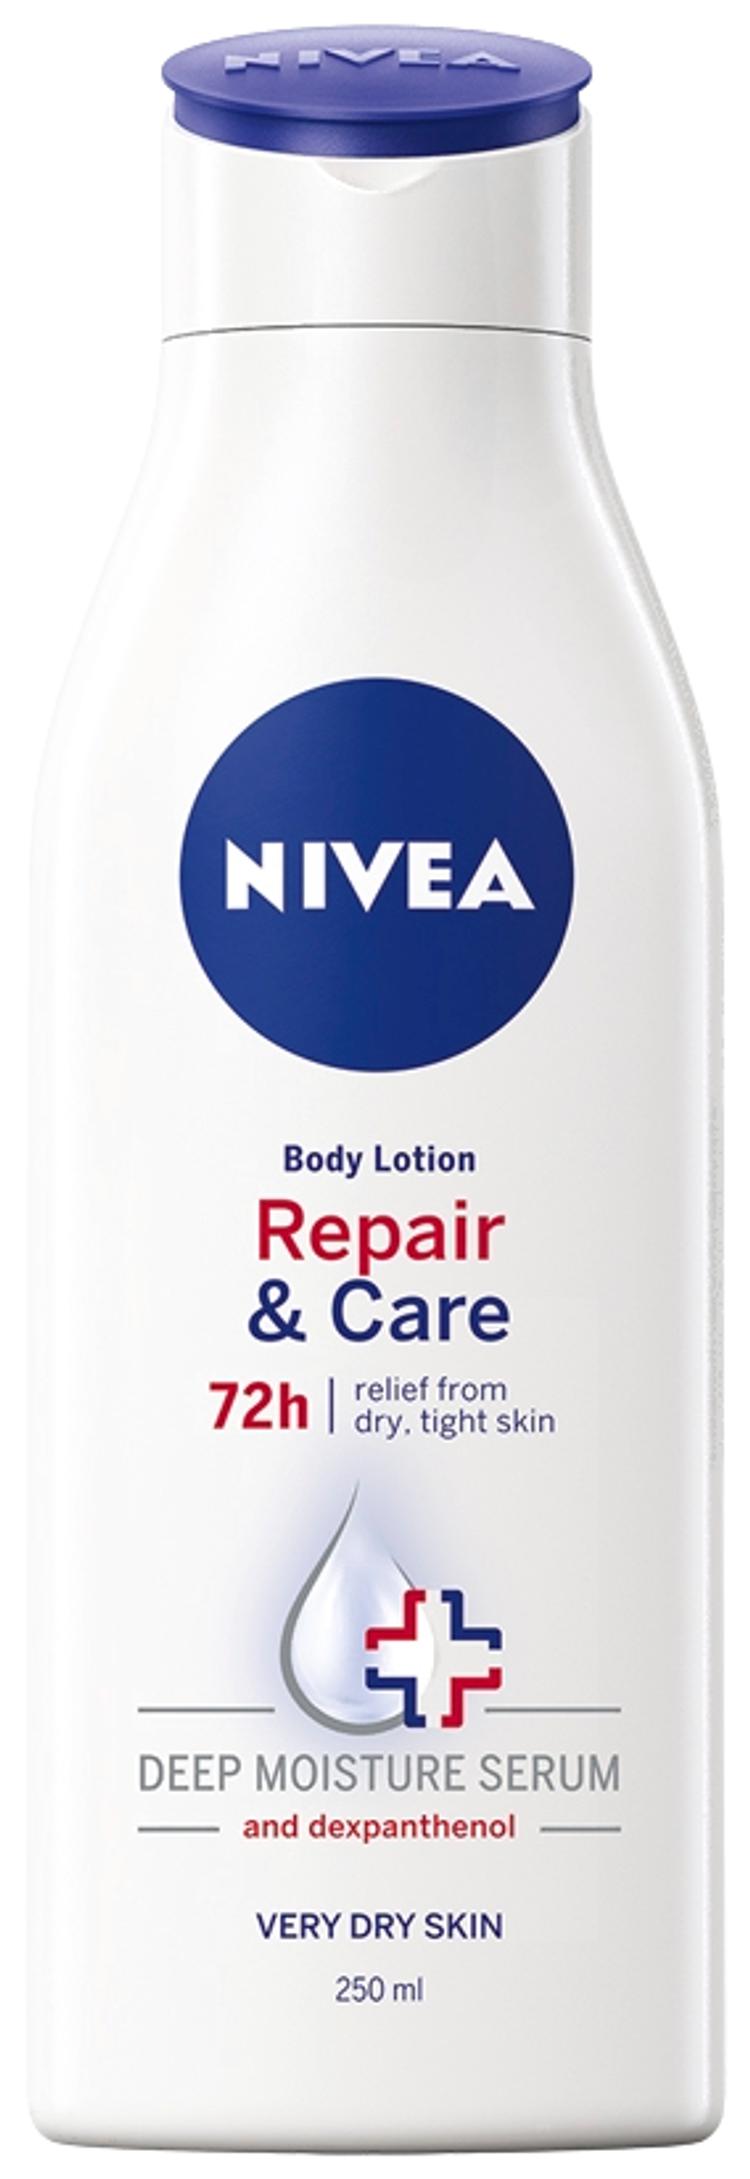 NIVEA 250ml Repair & Care Body Lotion vartaloemulsio erittäin kuivalle iholle